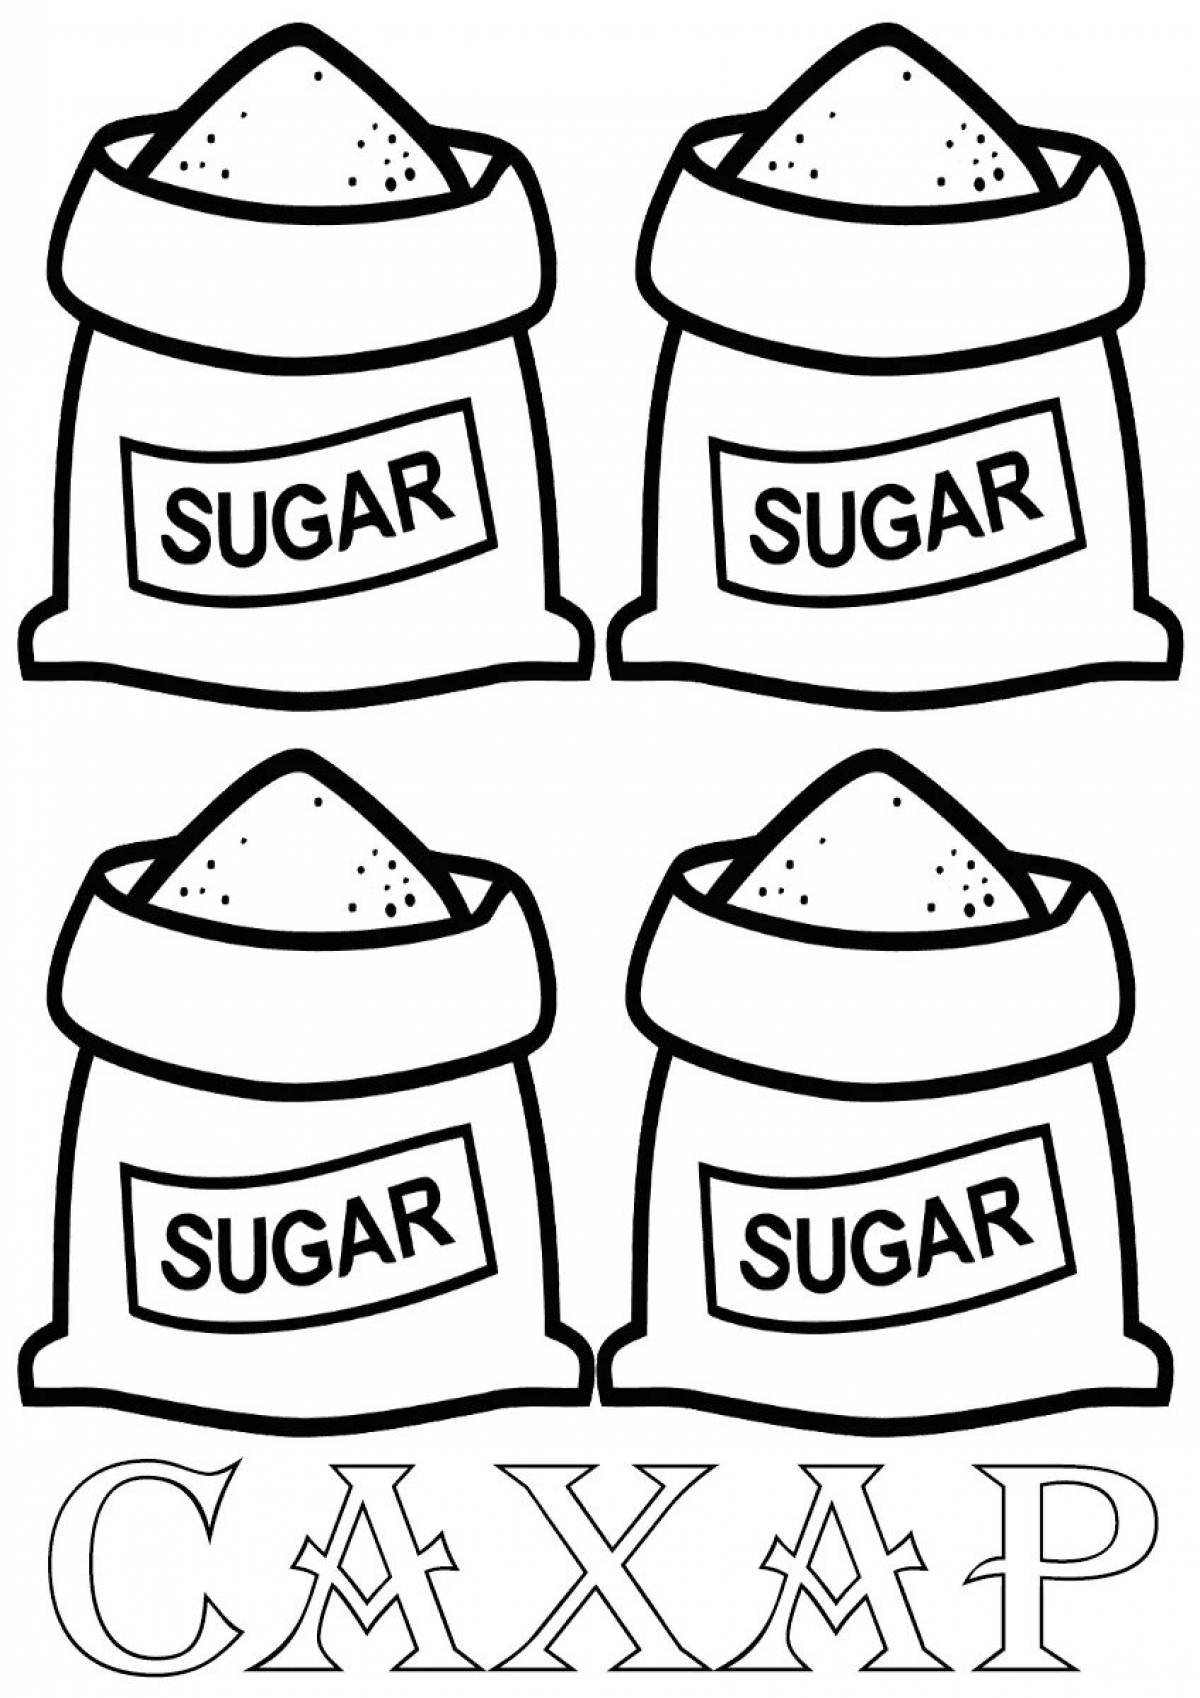 Superb sugar coloring page для дошкольников